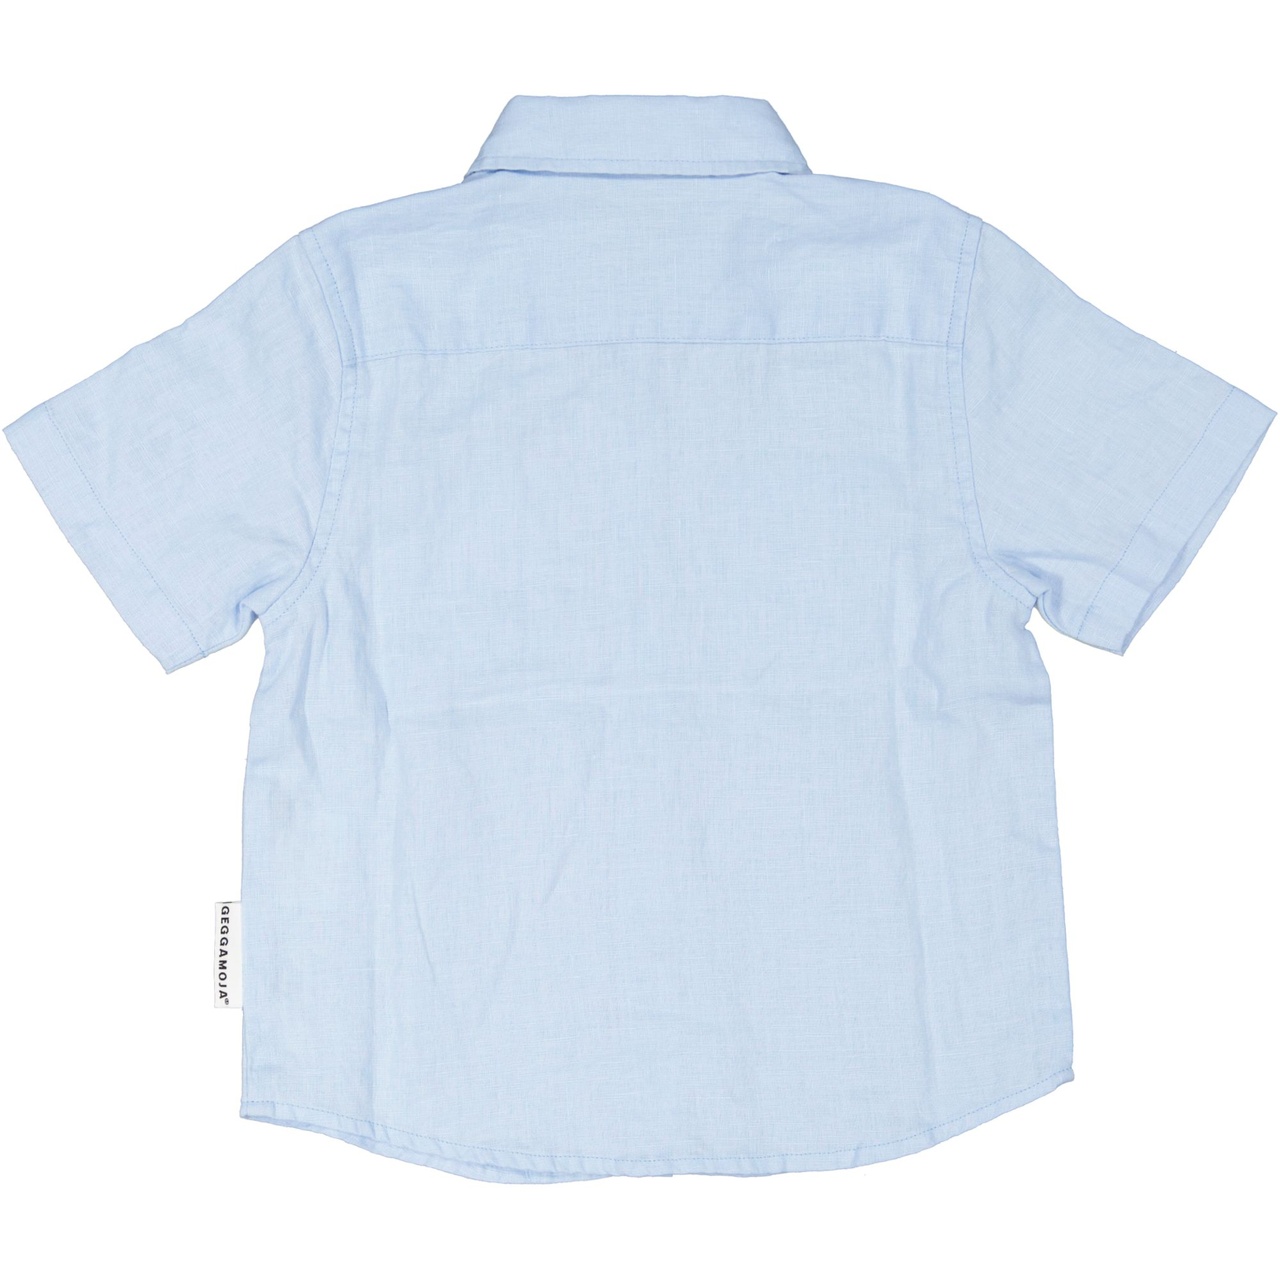 Linnen shirt L.blue 146/152